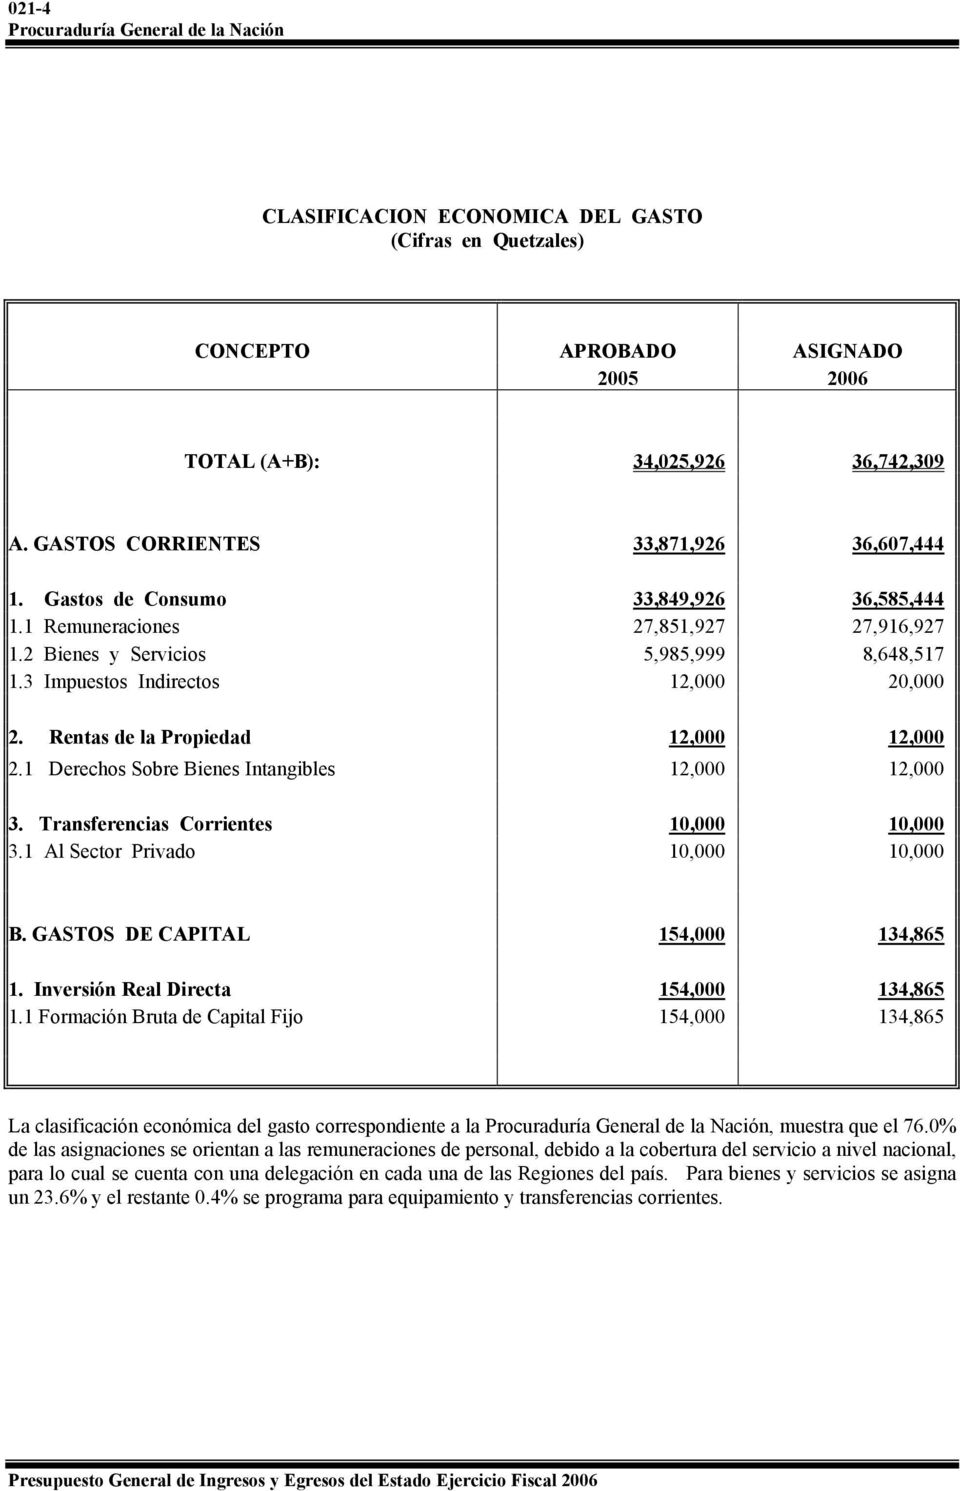 1 Derechos Sobre Bienes Intangibles 12,000 12,000 3. Transferencias Corrientes 10,000 10,000 3.1 Al Sector Privado 10,000 10,000 B. GASTOS DE CAPITAL 154,000 134,865 1.